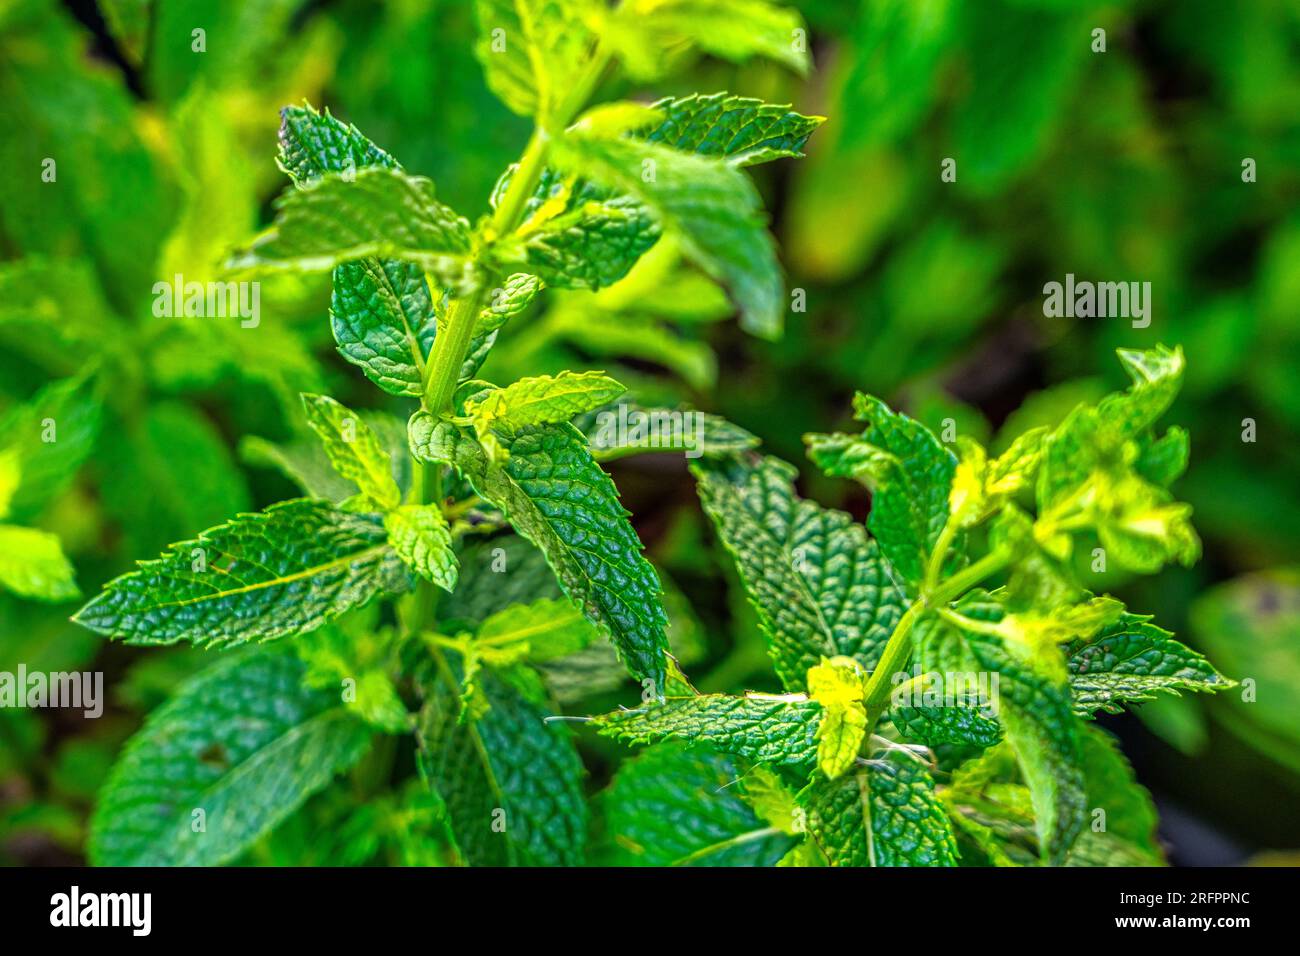 Foglia di menta fresca su sfondo verde. La Mentha spicata è un'erba aromatica appartenente alla famiglia delle Lamiaceae presso il mercato agricolo Foto Stock